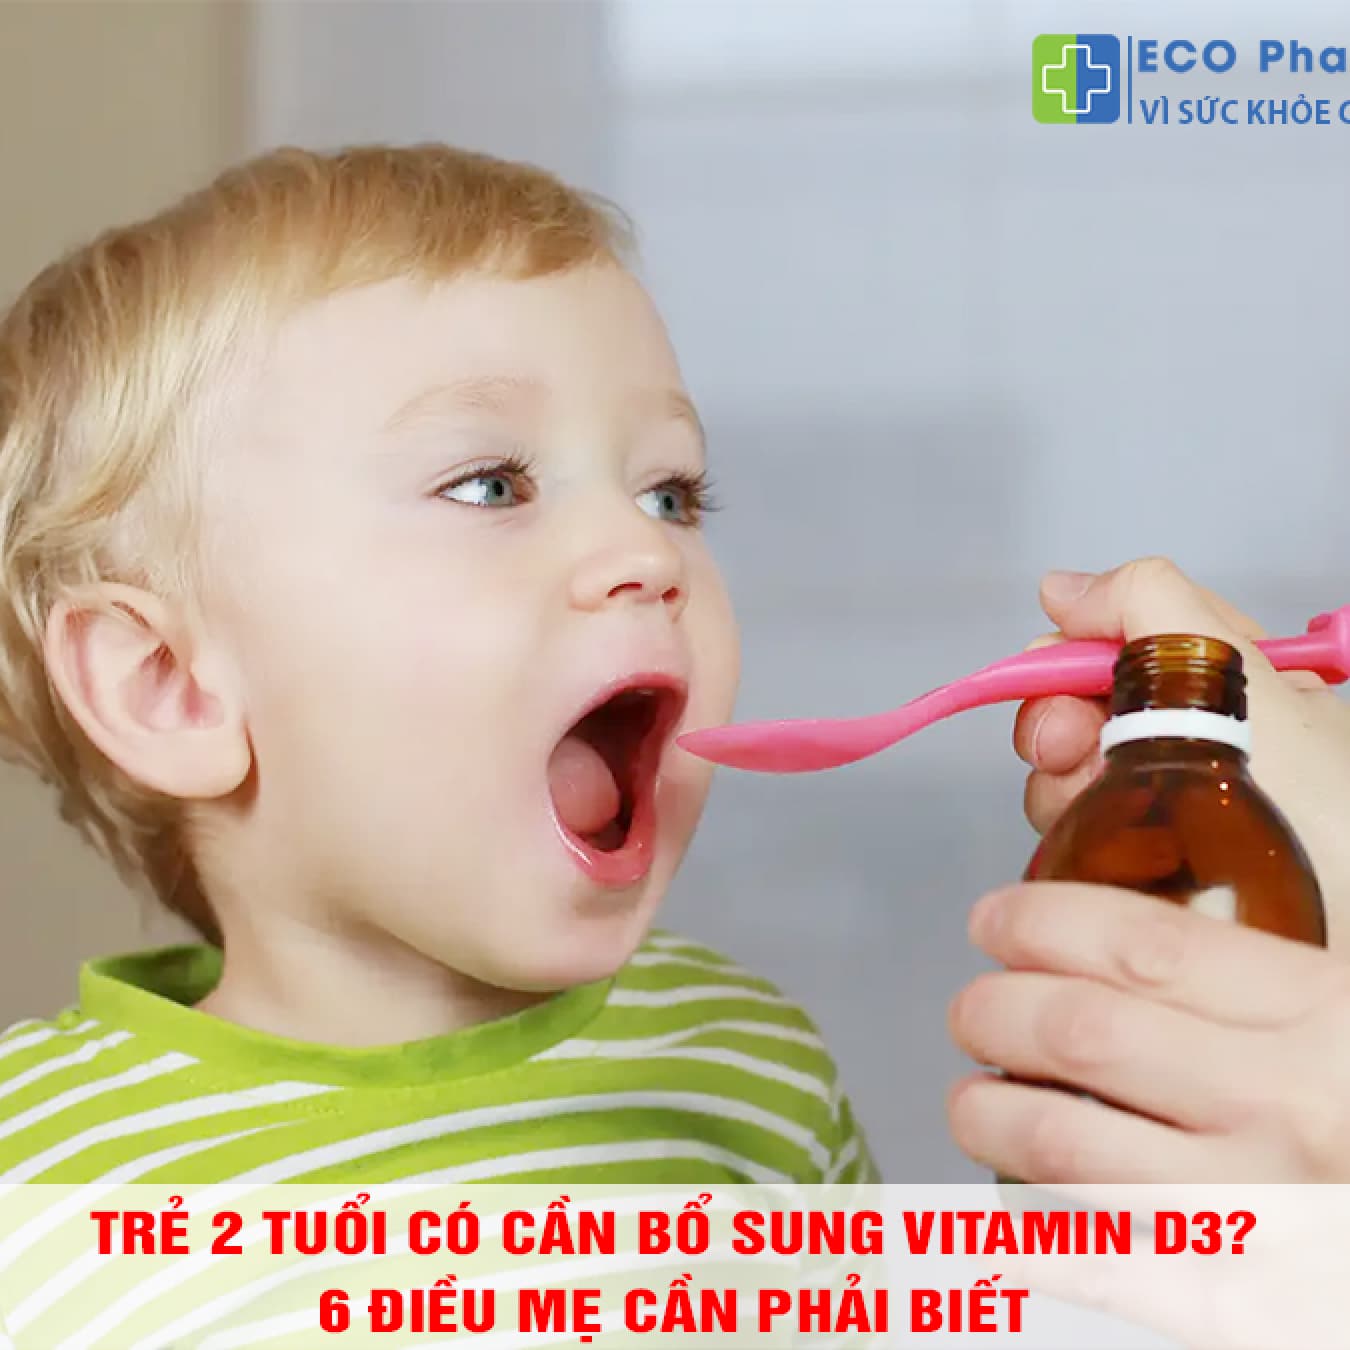 Trẻ 2 tuổi có cần bổ sung vitamin D3? 6 điều mẹ cần phải biết